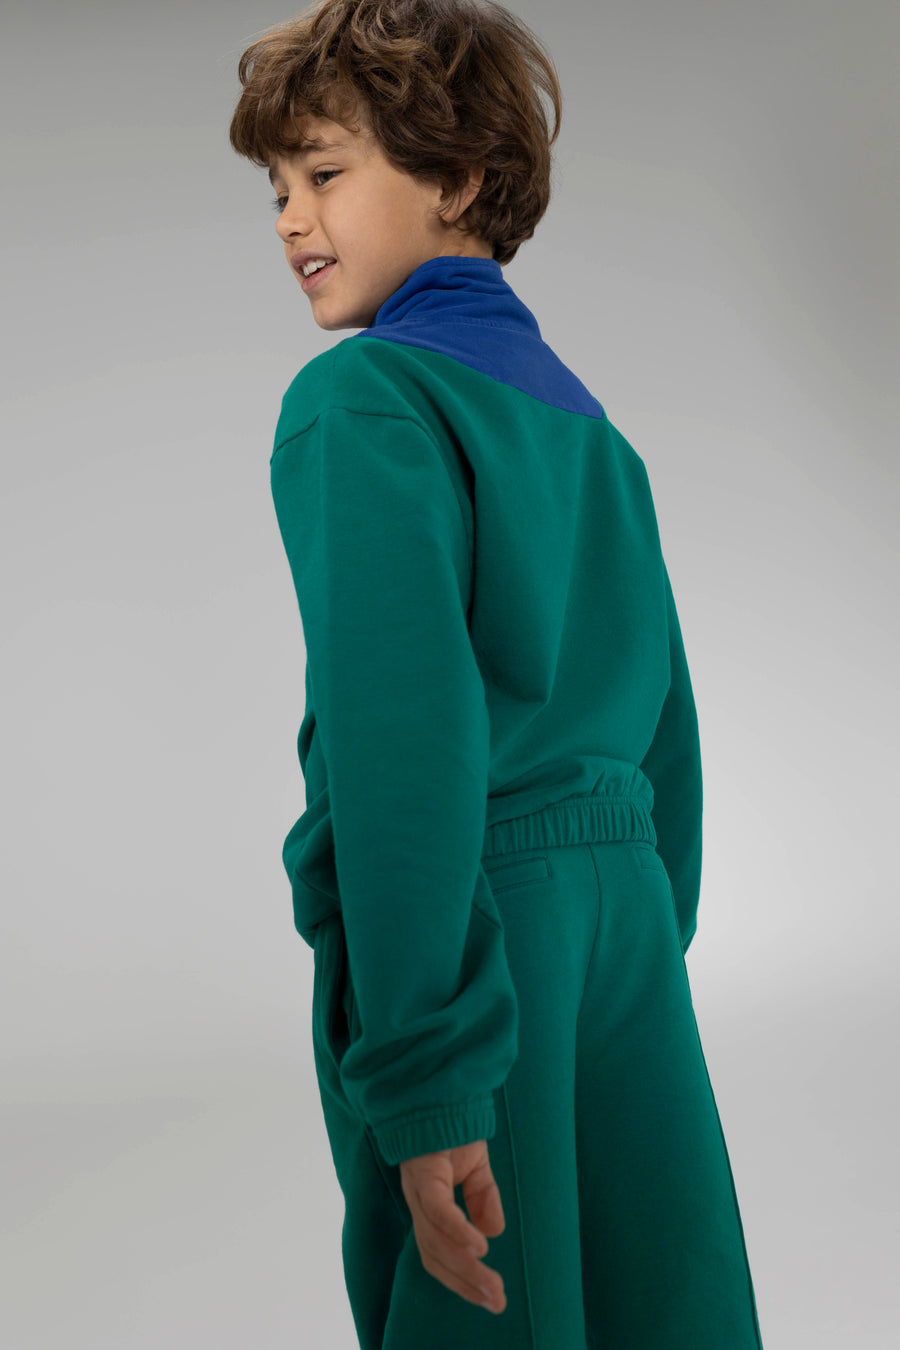 AW23 Zipper Sweater Surf The Web Ultramarine Green